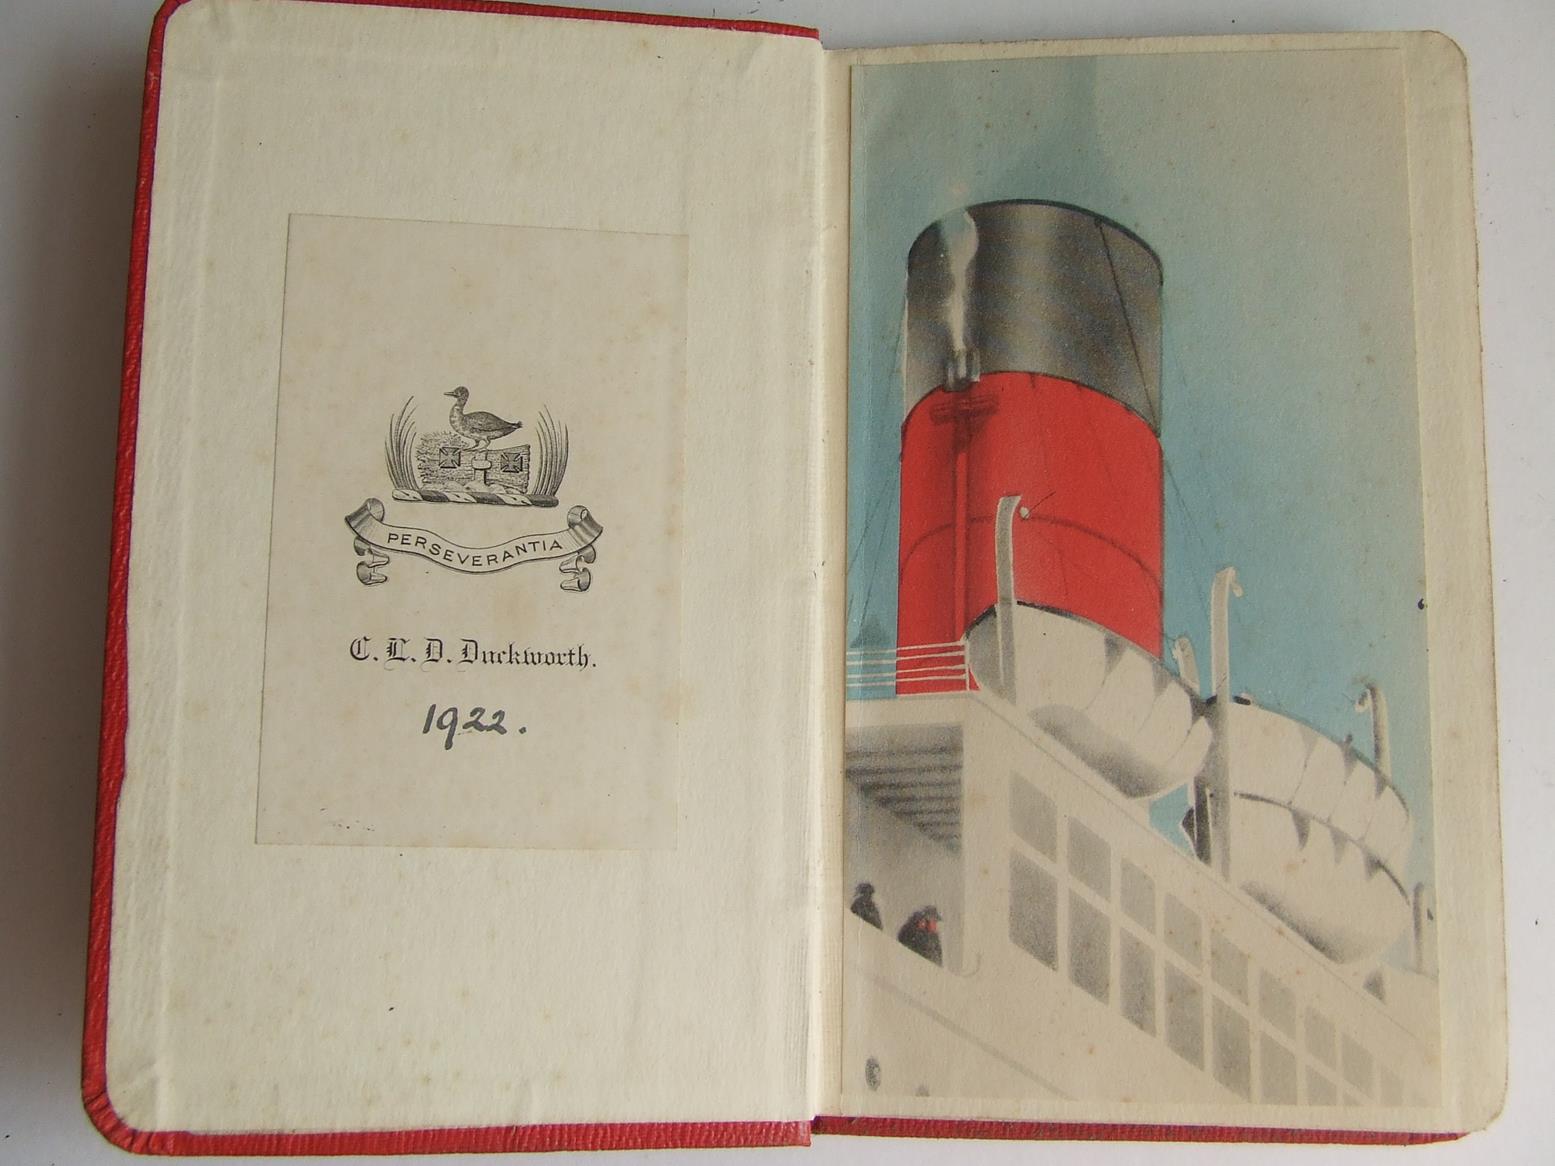 Fleet of the Cunard Line from 1840 - manuscript